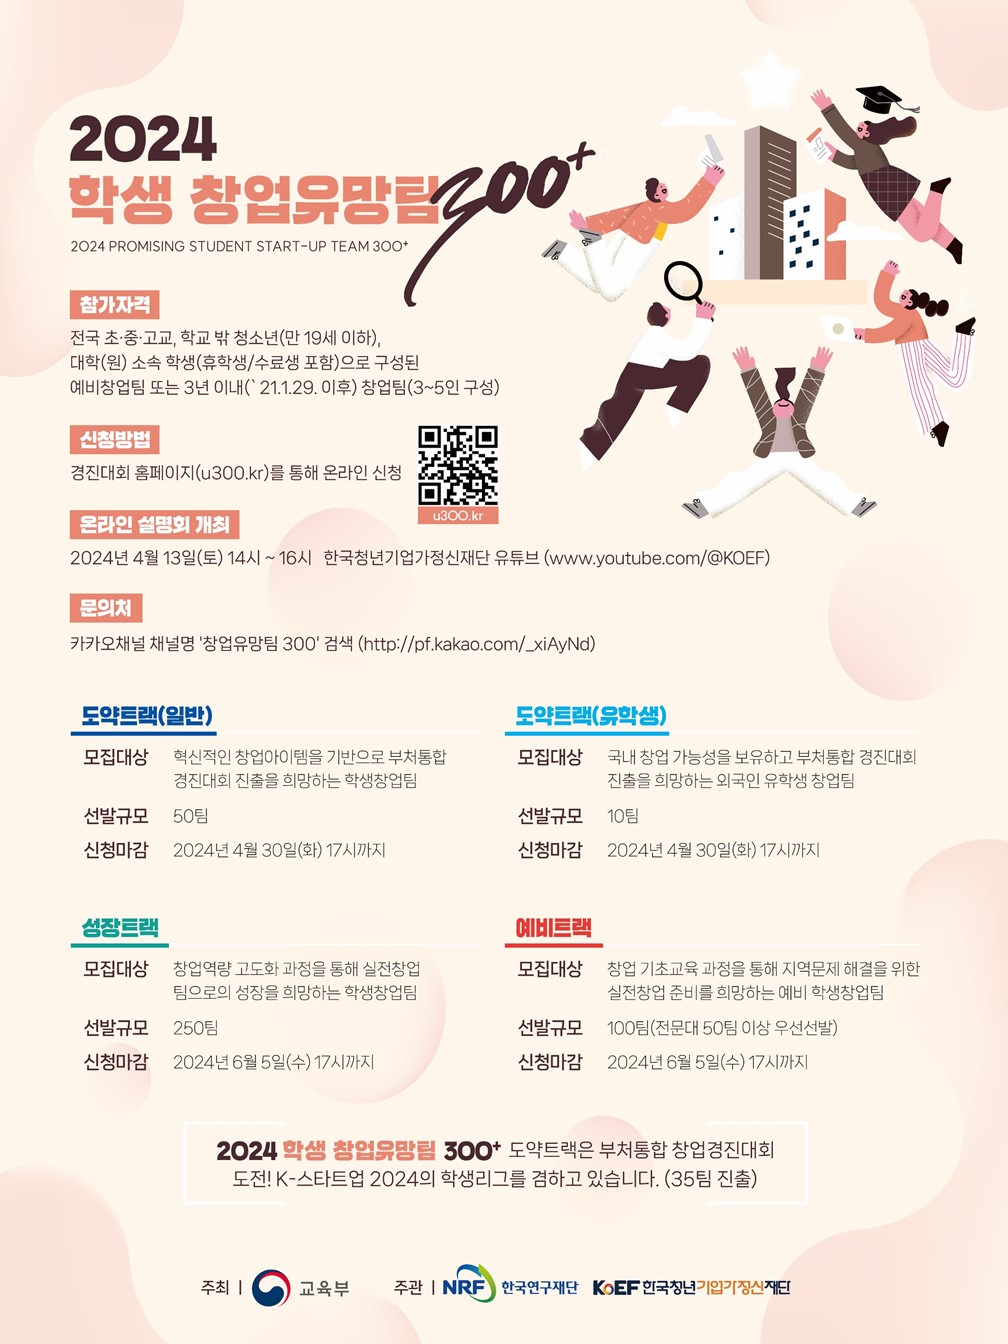 붙임2. 2024 학생 창업유망팀 300 포스터(국문).jpg